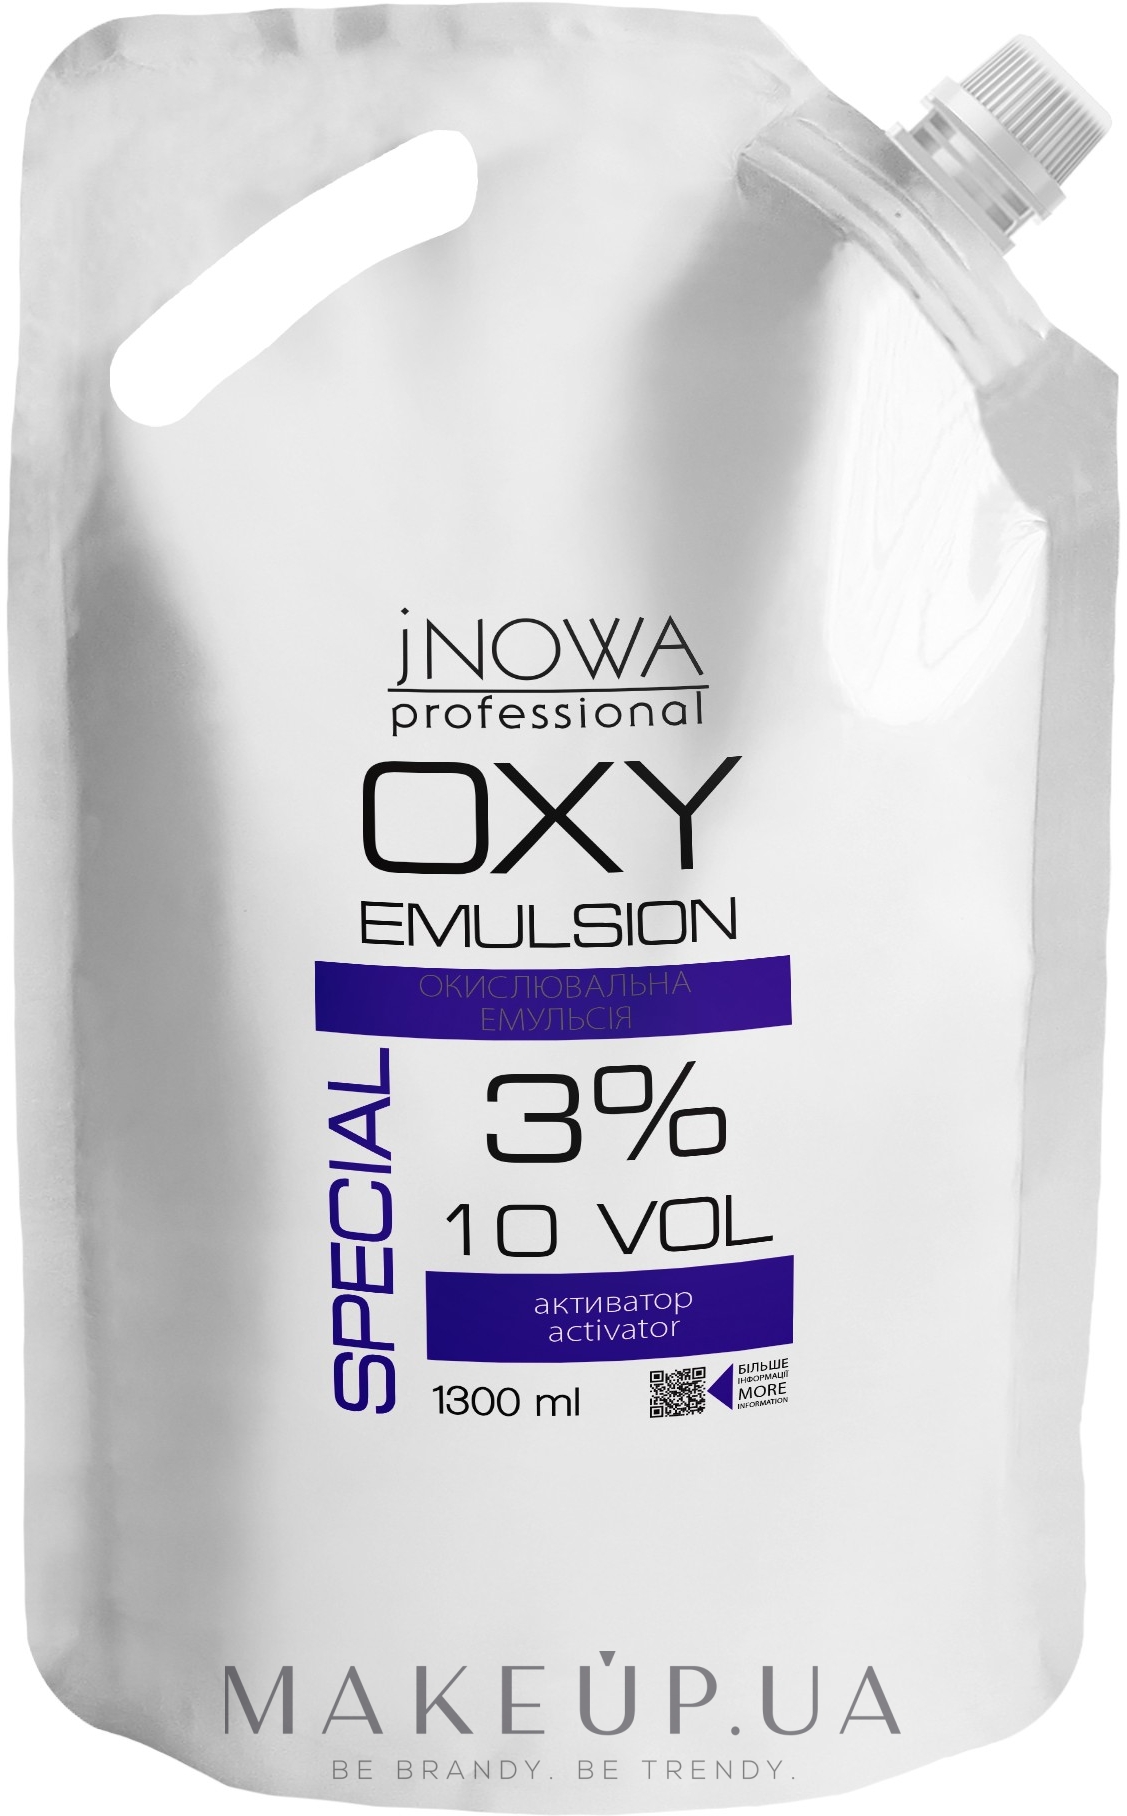 Окислительная эмульсия 3% - jNOWA Professional OXY Emulsion Special 10 vol (дой-пак) — фото 1300ml